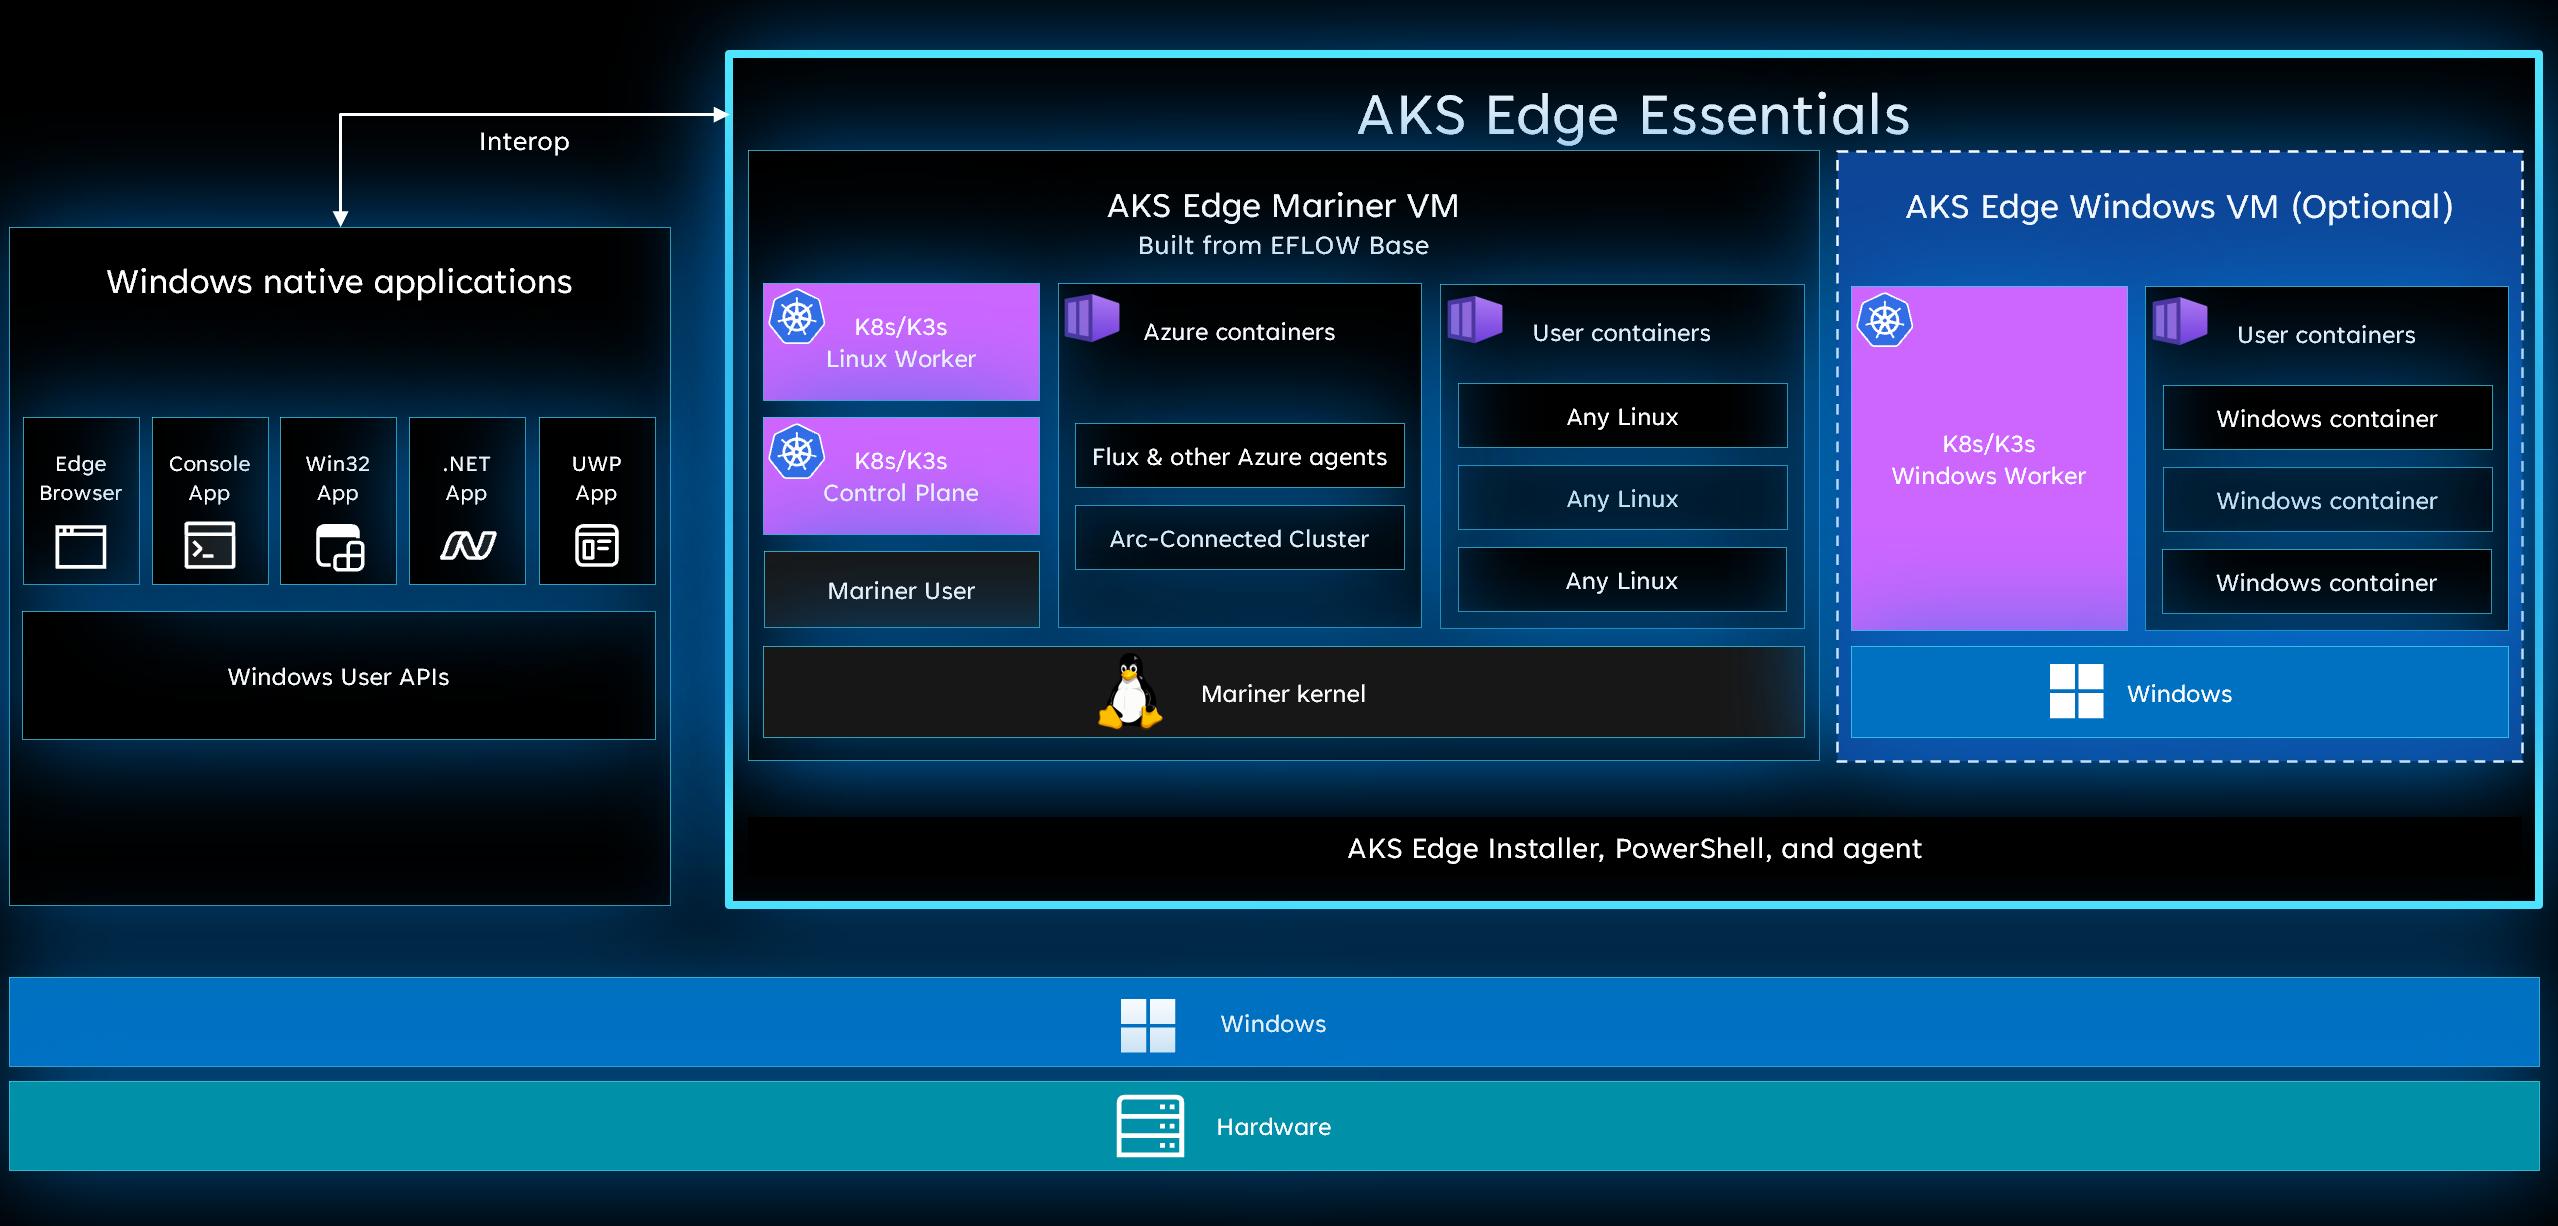 Diagrama de interoperabilidad de AKS Edge Essentials.